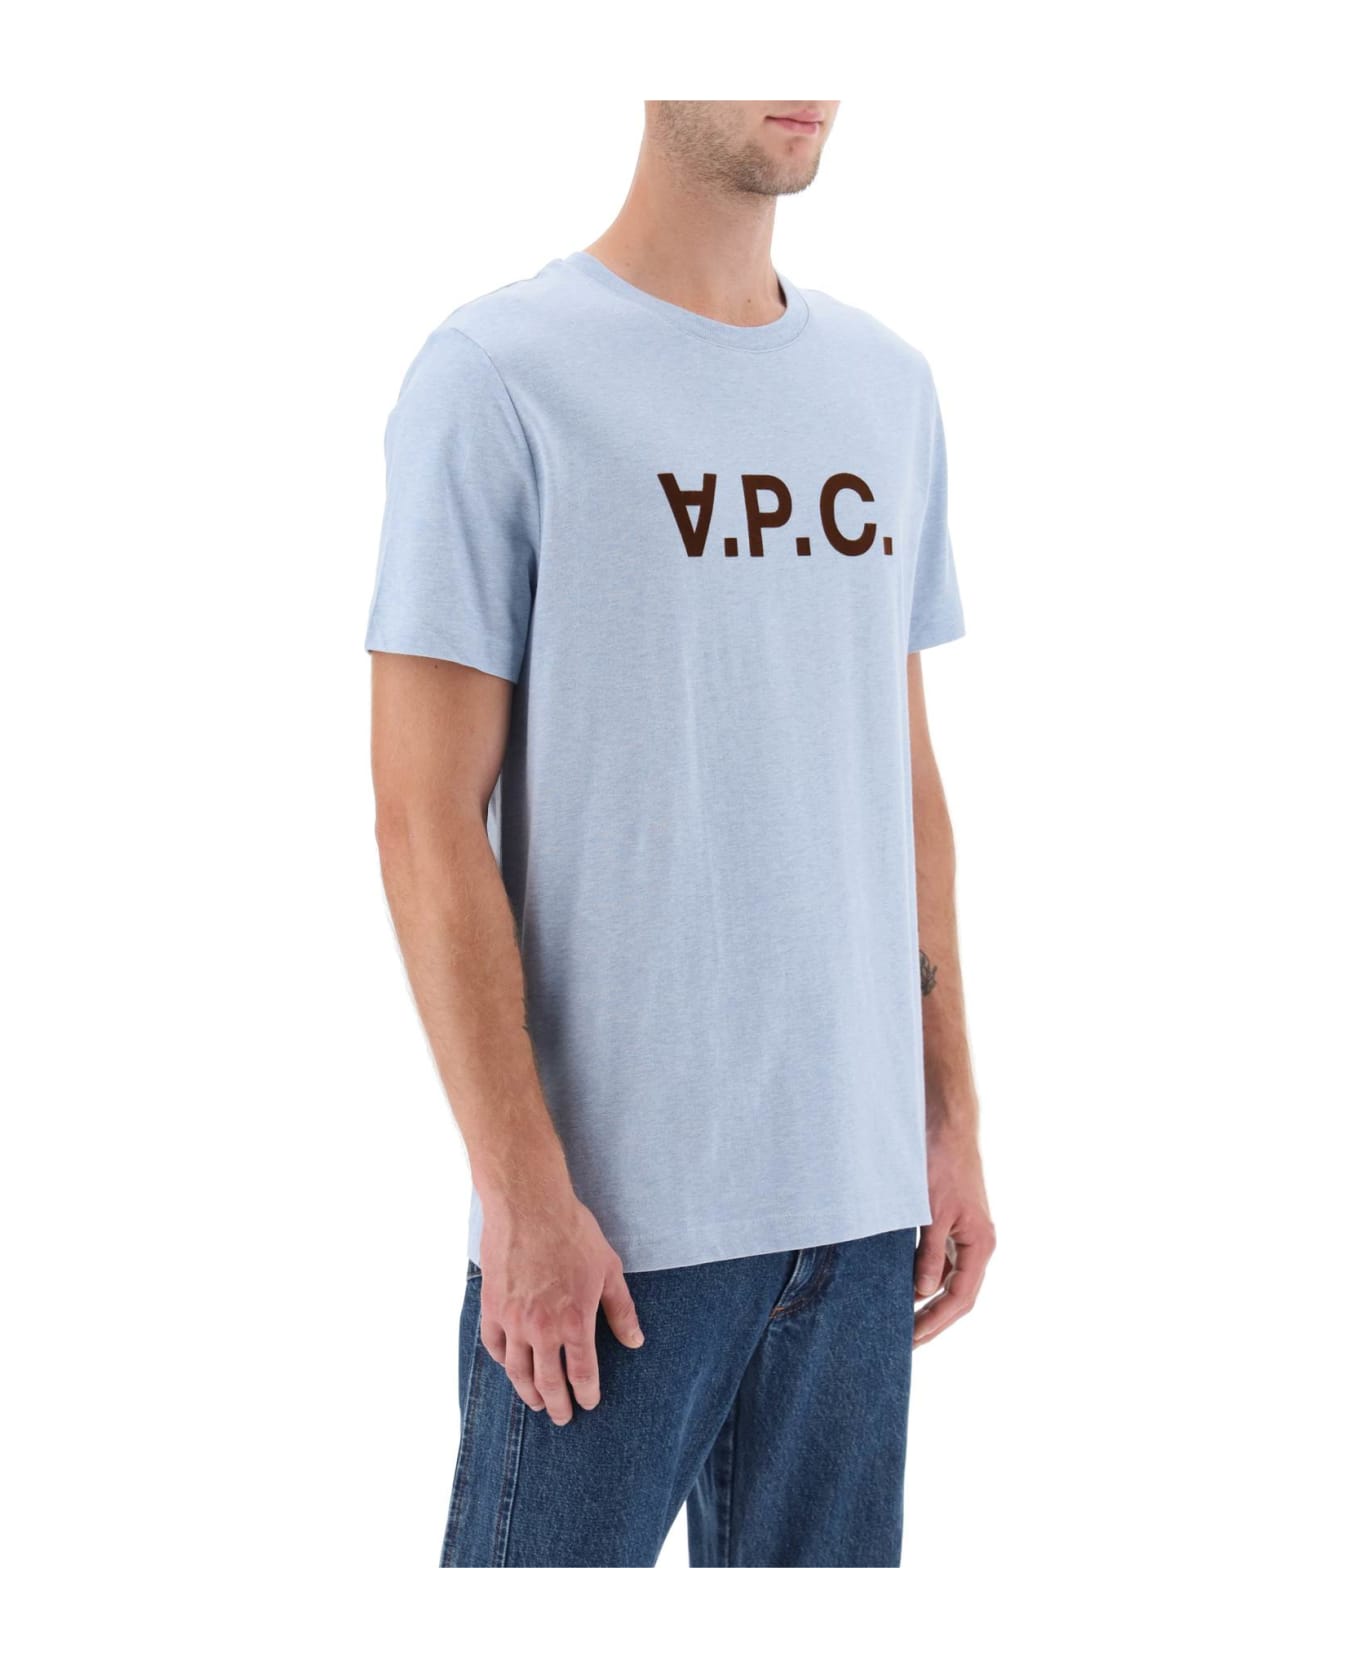 A.P.C. V.p.c. Logo T-shirt - INDIGO DELAVE シャツ